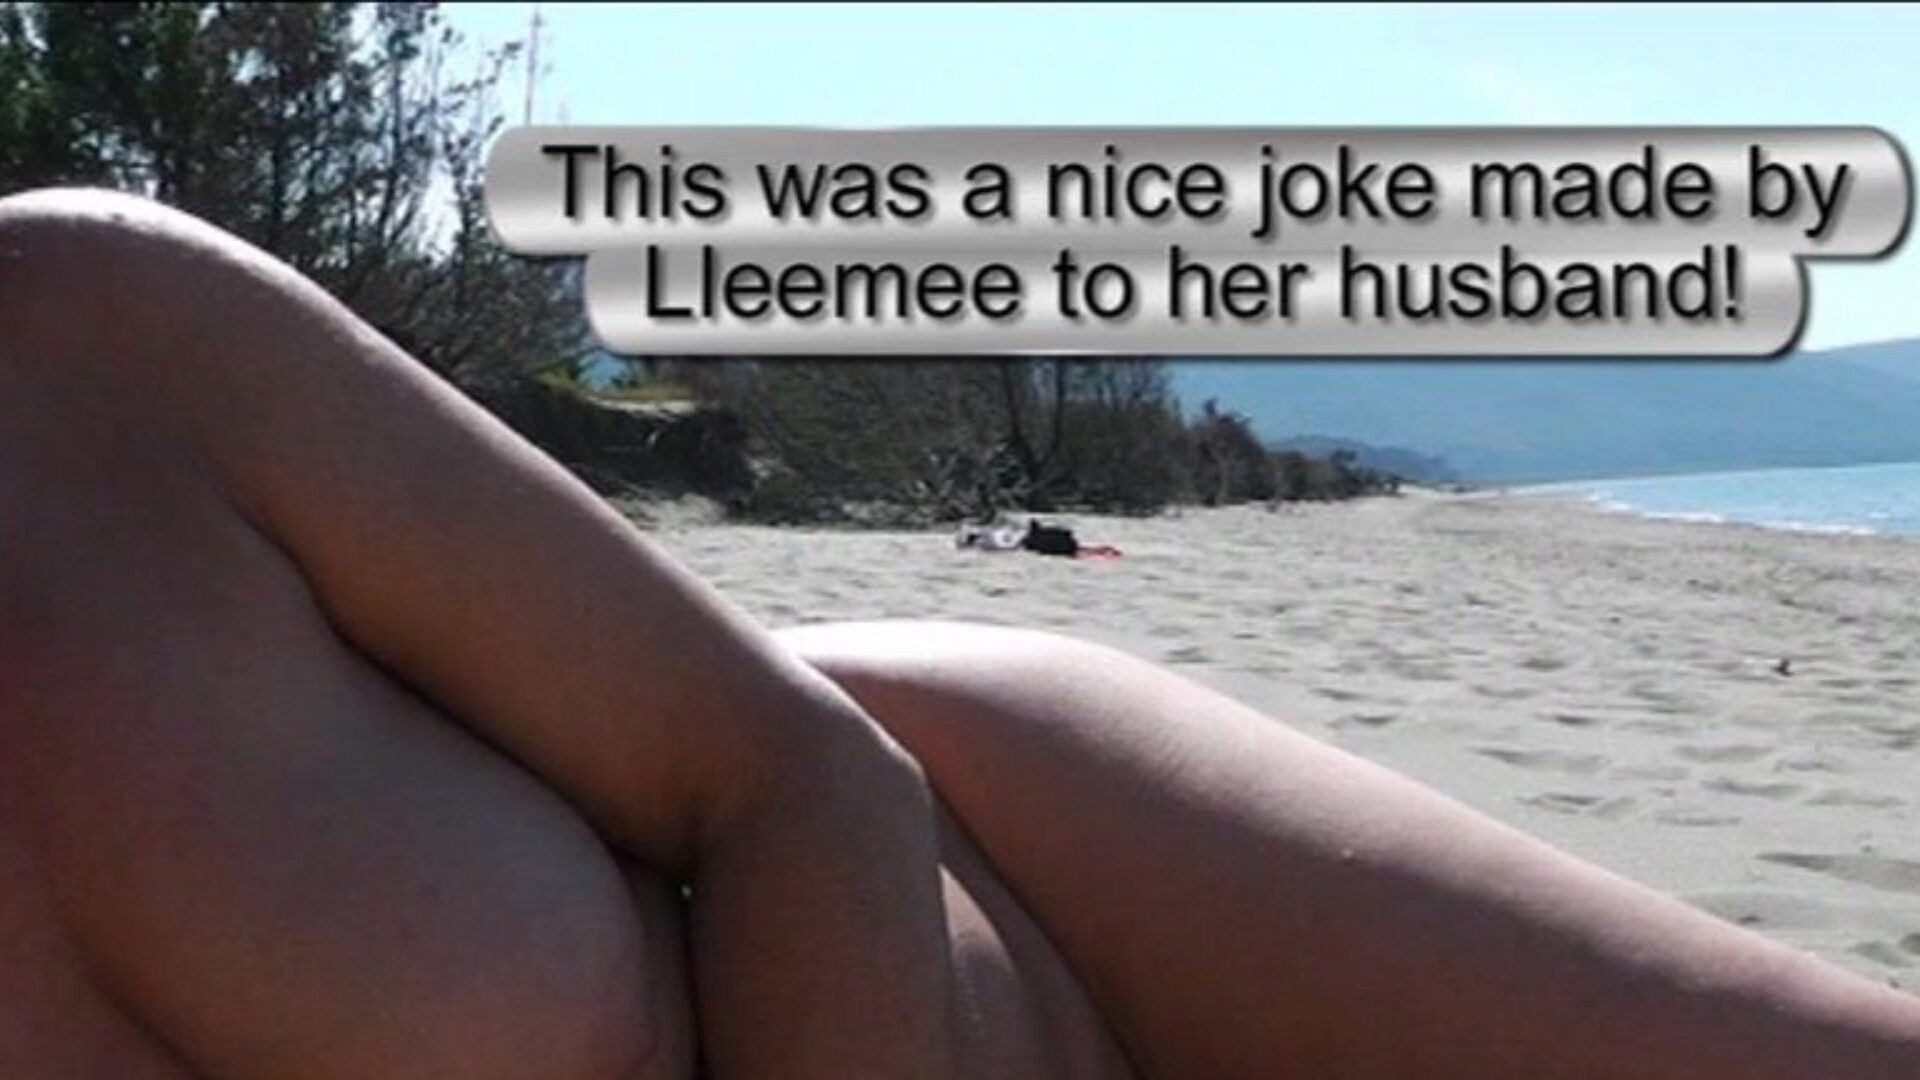 show na praia escapando - homem testemunhando 2 uma piada muito interessante feita por lleemee para seu esposo